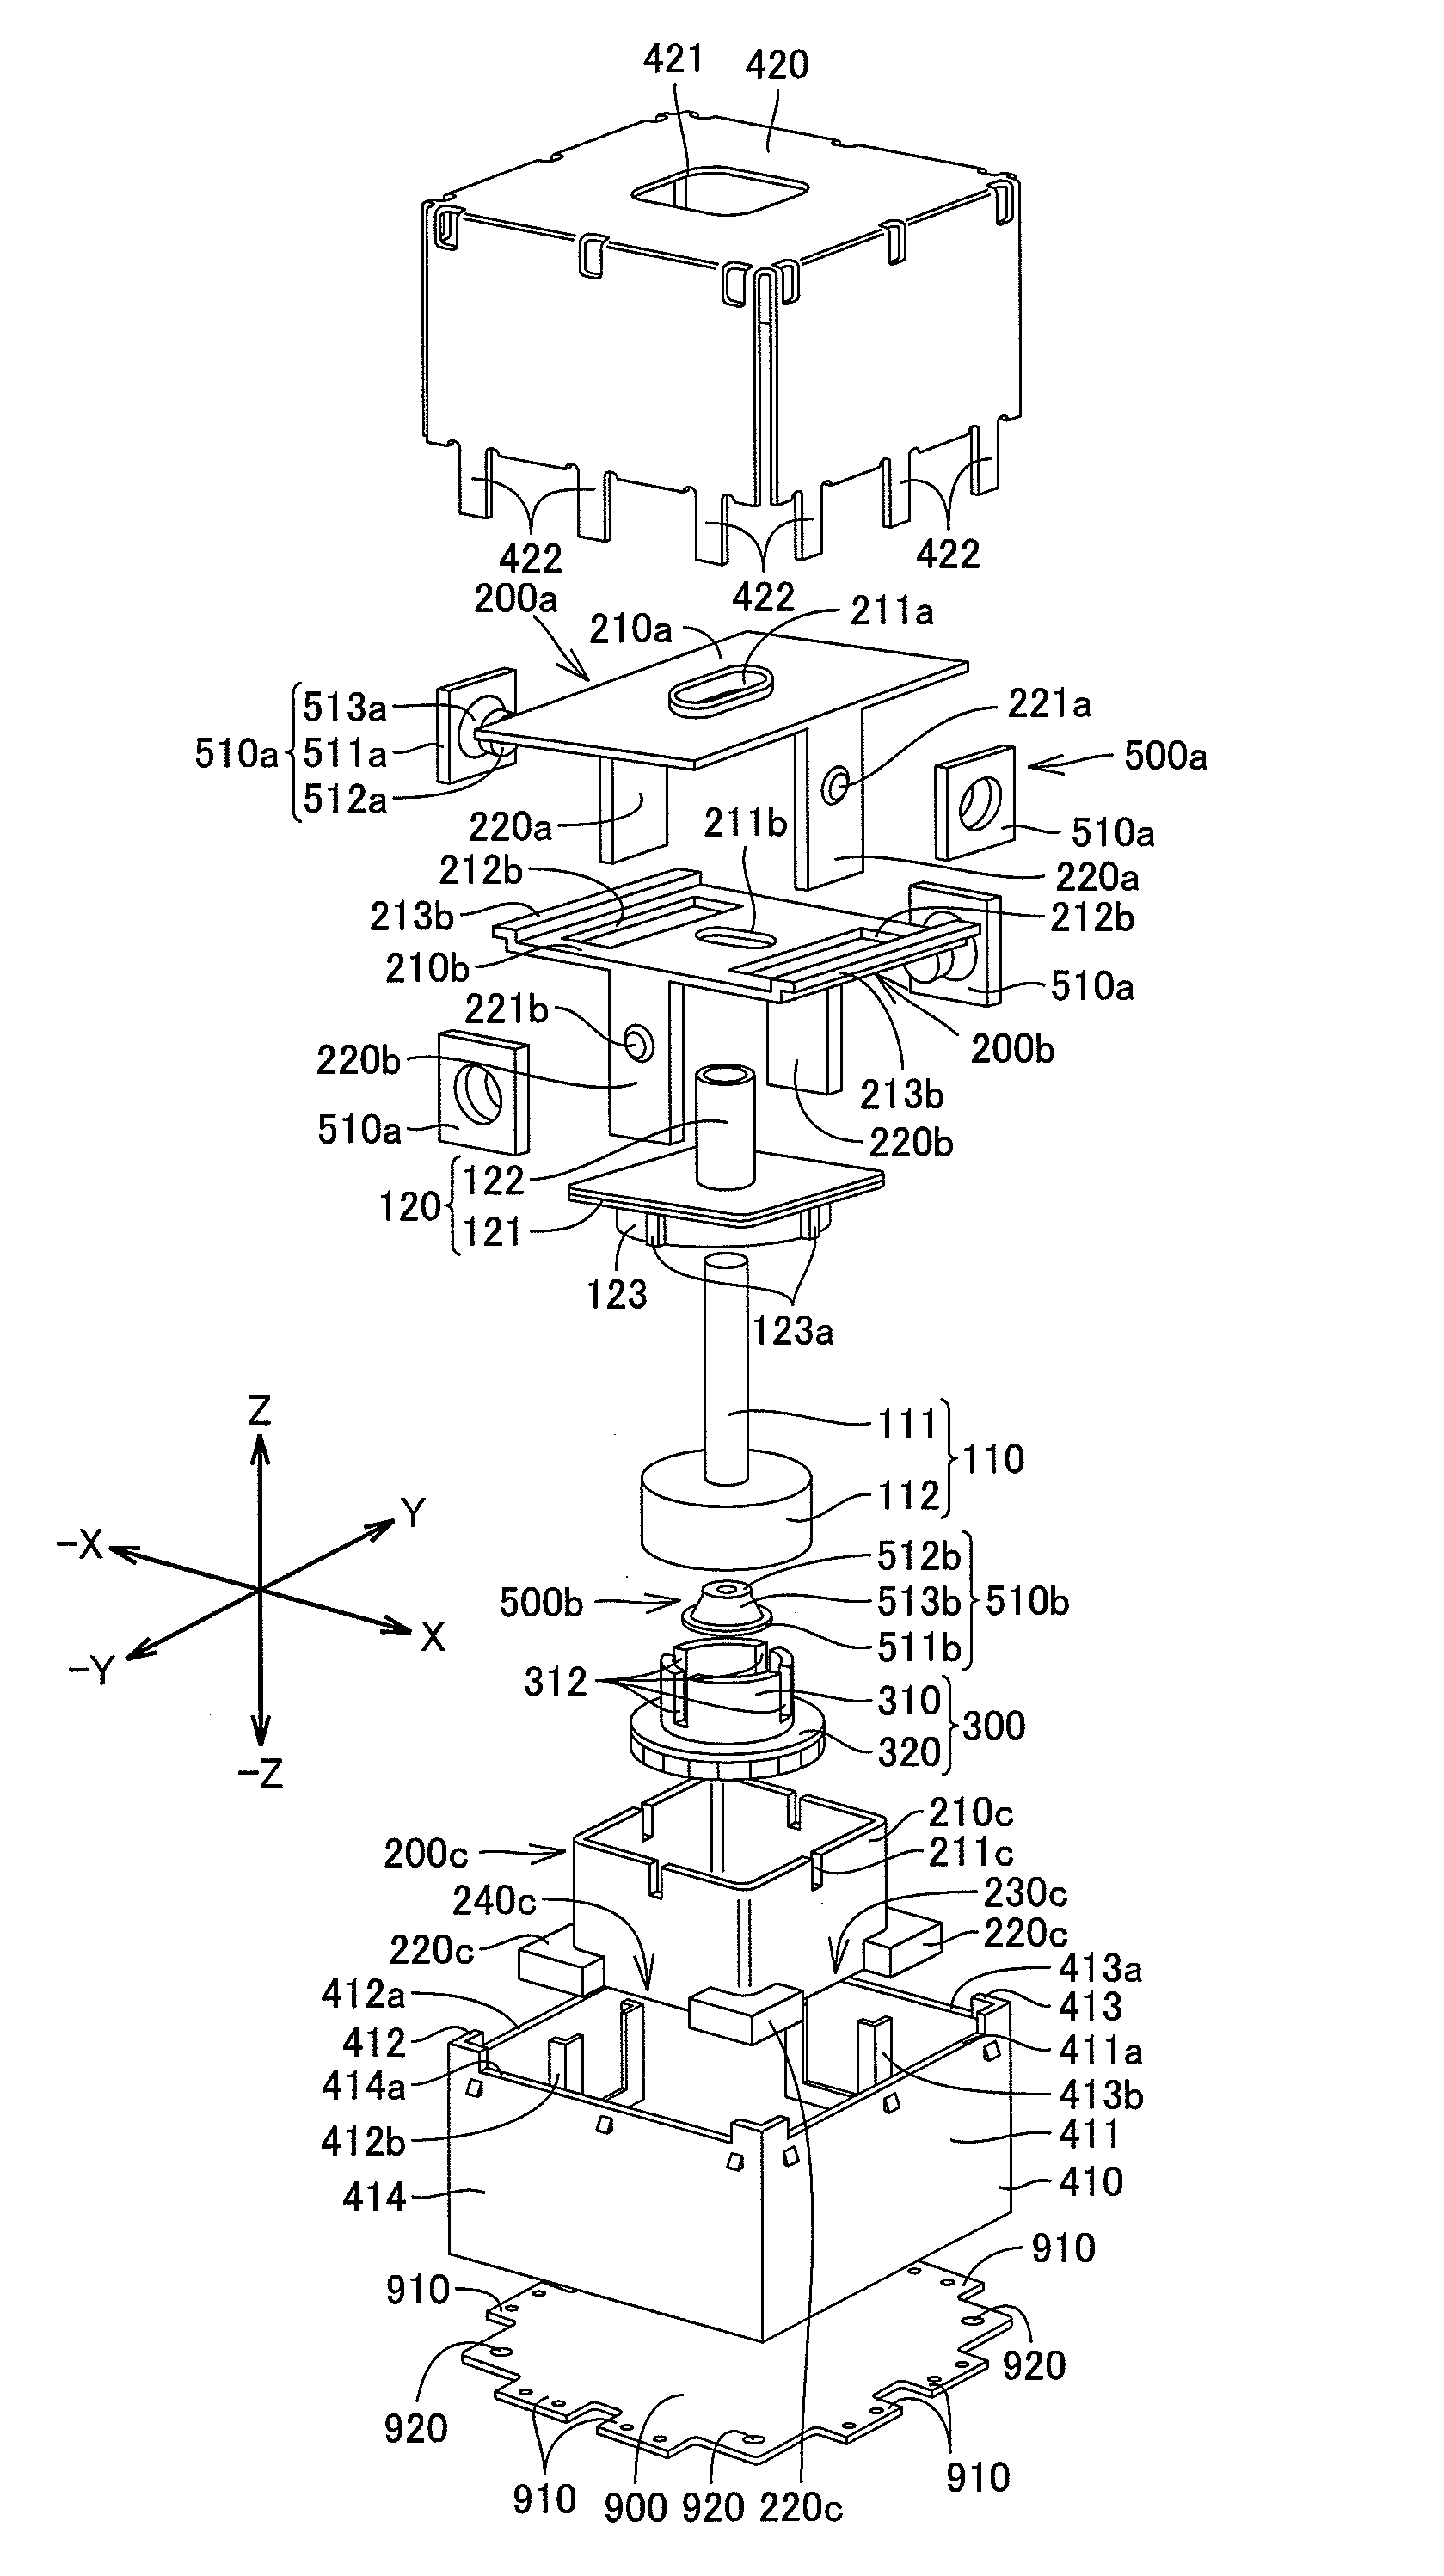 Input apparatus